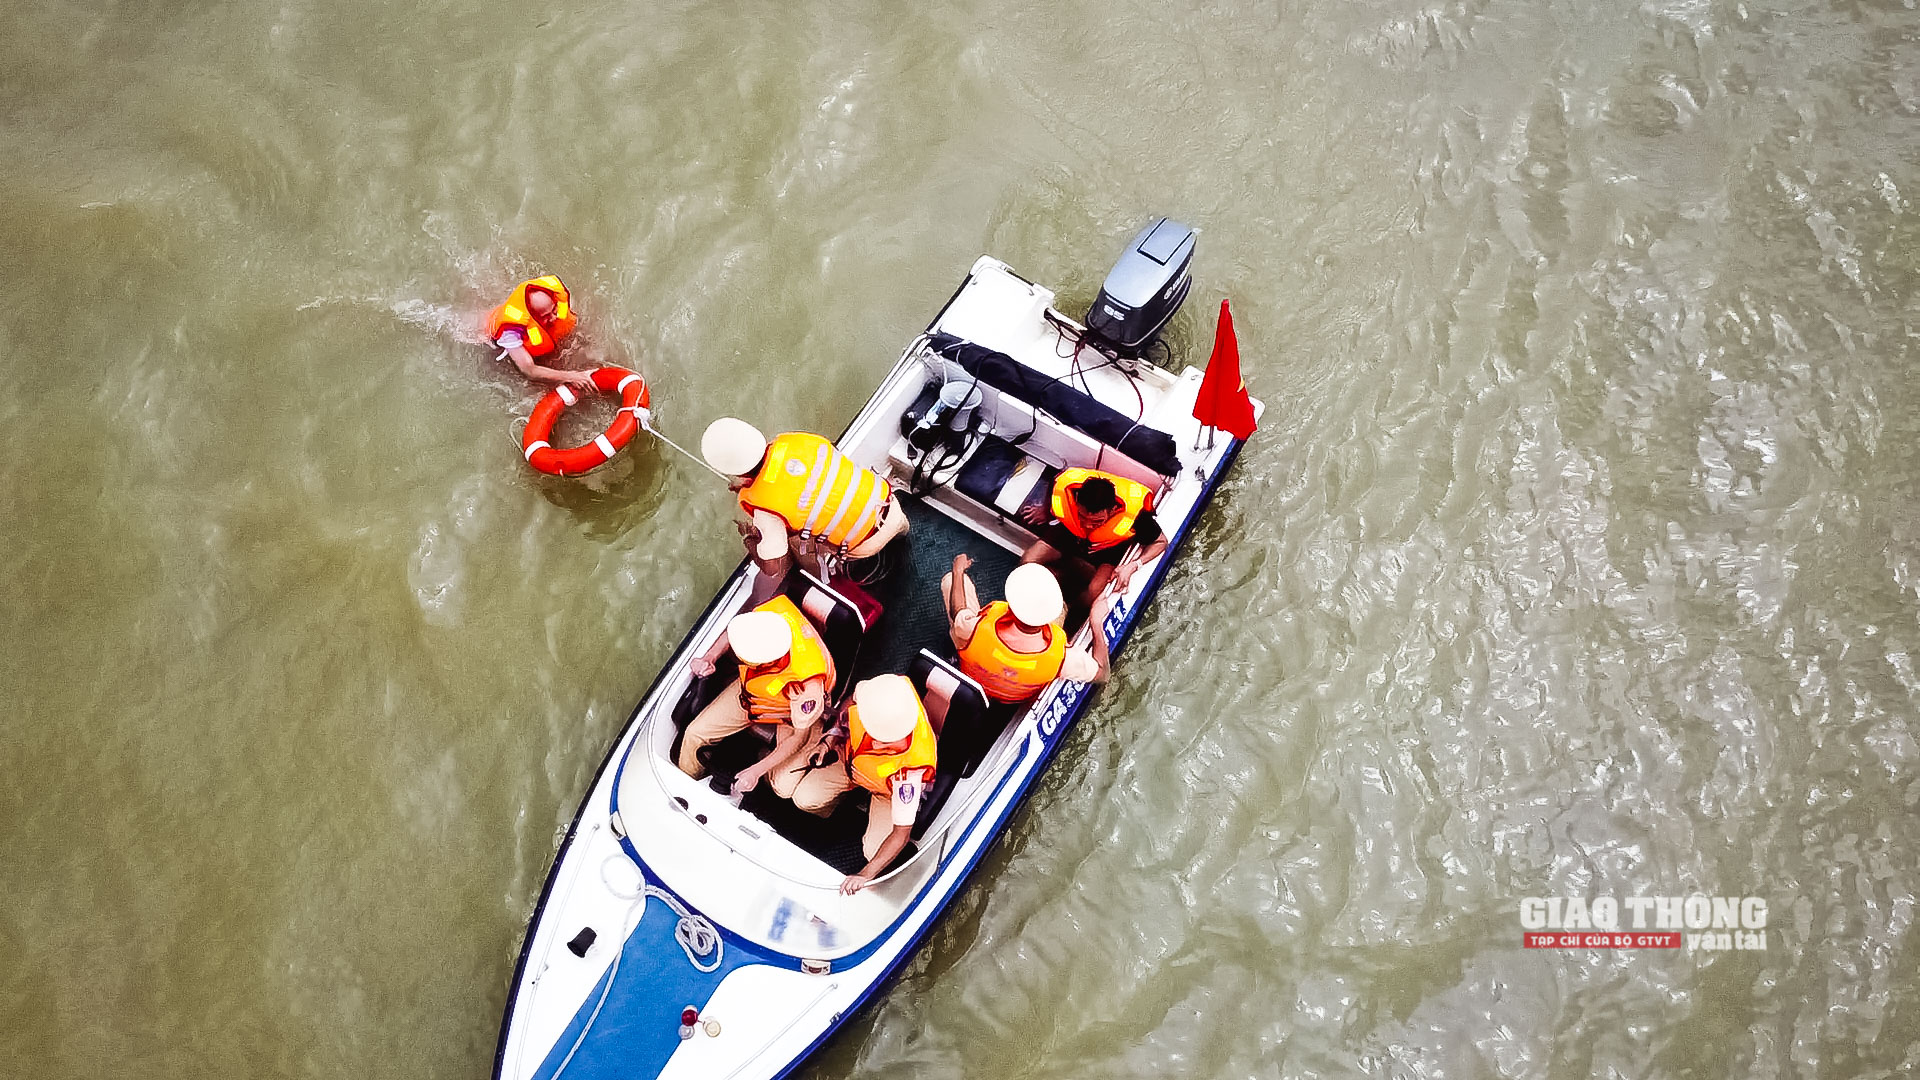 Lực lượng của Đội Cảnh sát đường thủy thuộc Phòng CSGT Thanh Hóa đang thực hiện nhiệm vụ tuần tra, kiểm soát bảo đảm ATGT trên luồng ĐTNĐ sông Mã đã nhanh chóng đến hiện trường phối hợp với các lực lượng tham gia tìm kiếm cứu nạn.